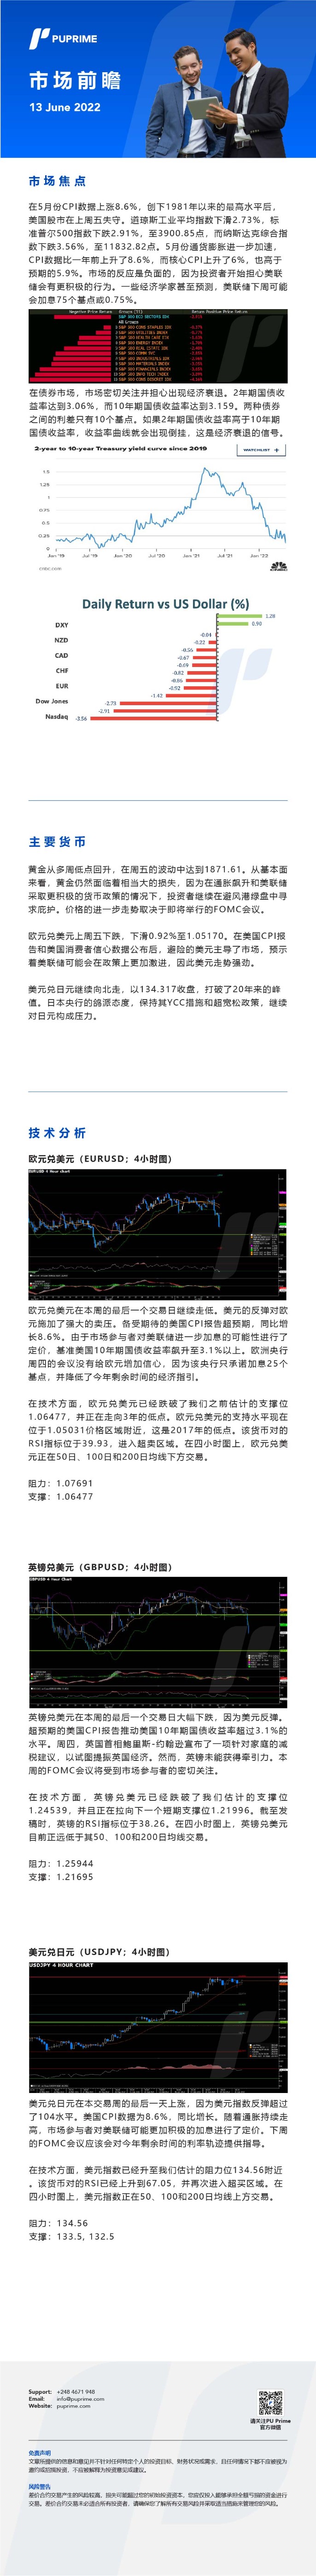 13062022 Daily Market Analysis__CHN.jpg